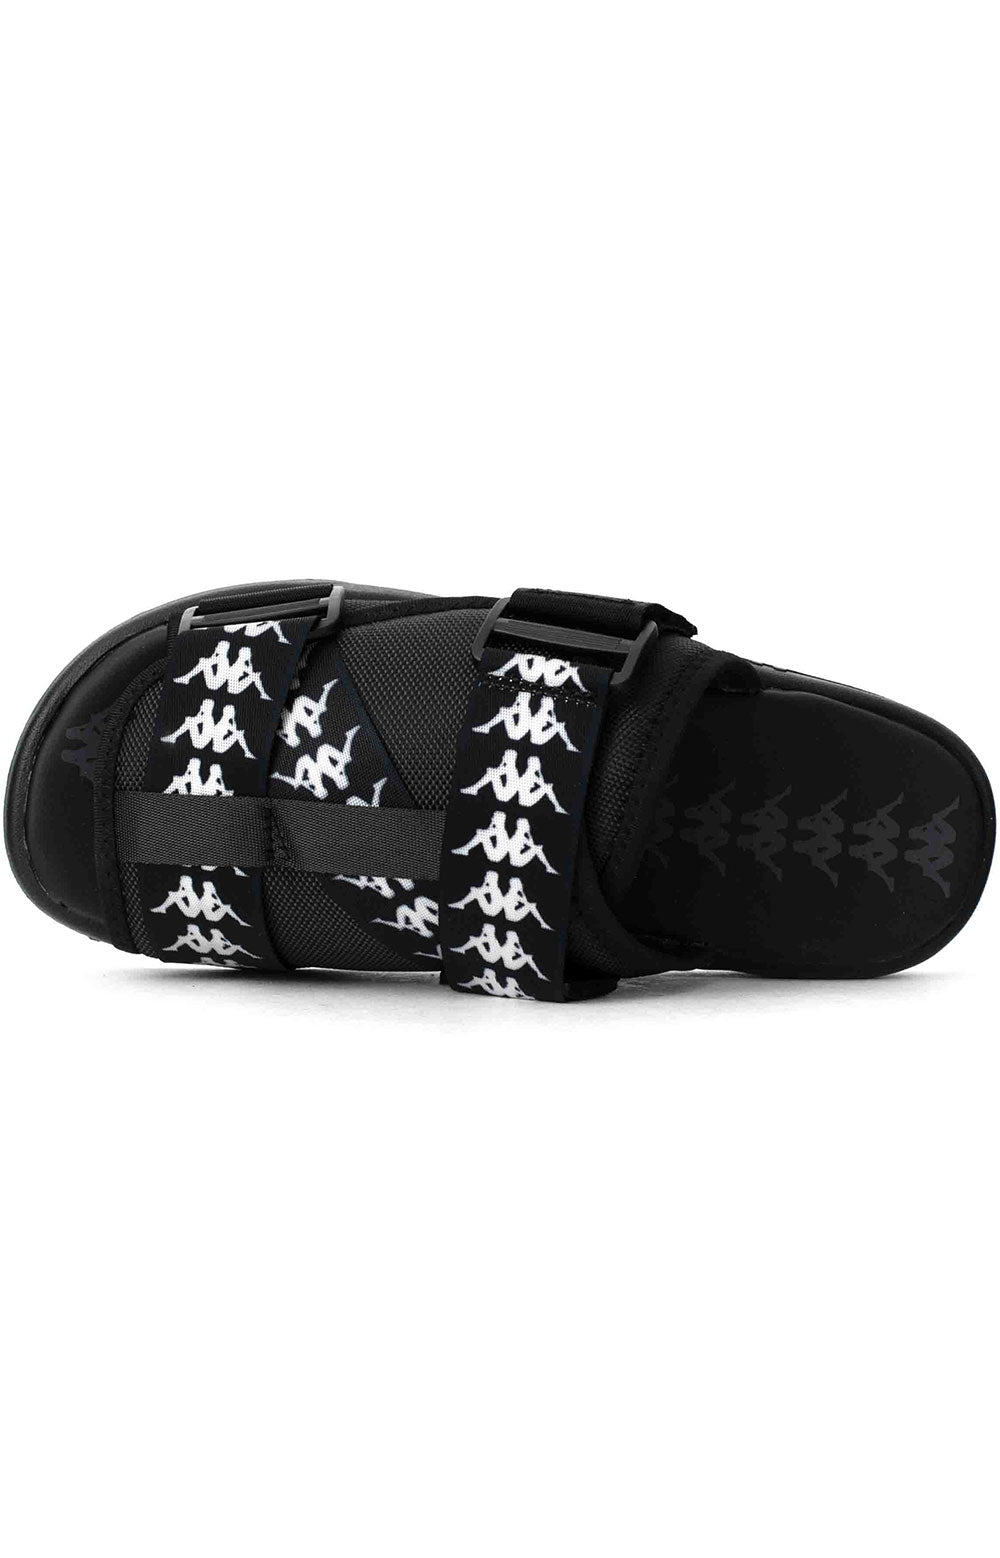 (304KUQ0) 222 Banda Mitel 1 Sandals - Black/White/Black